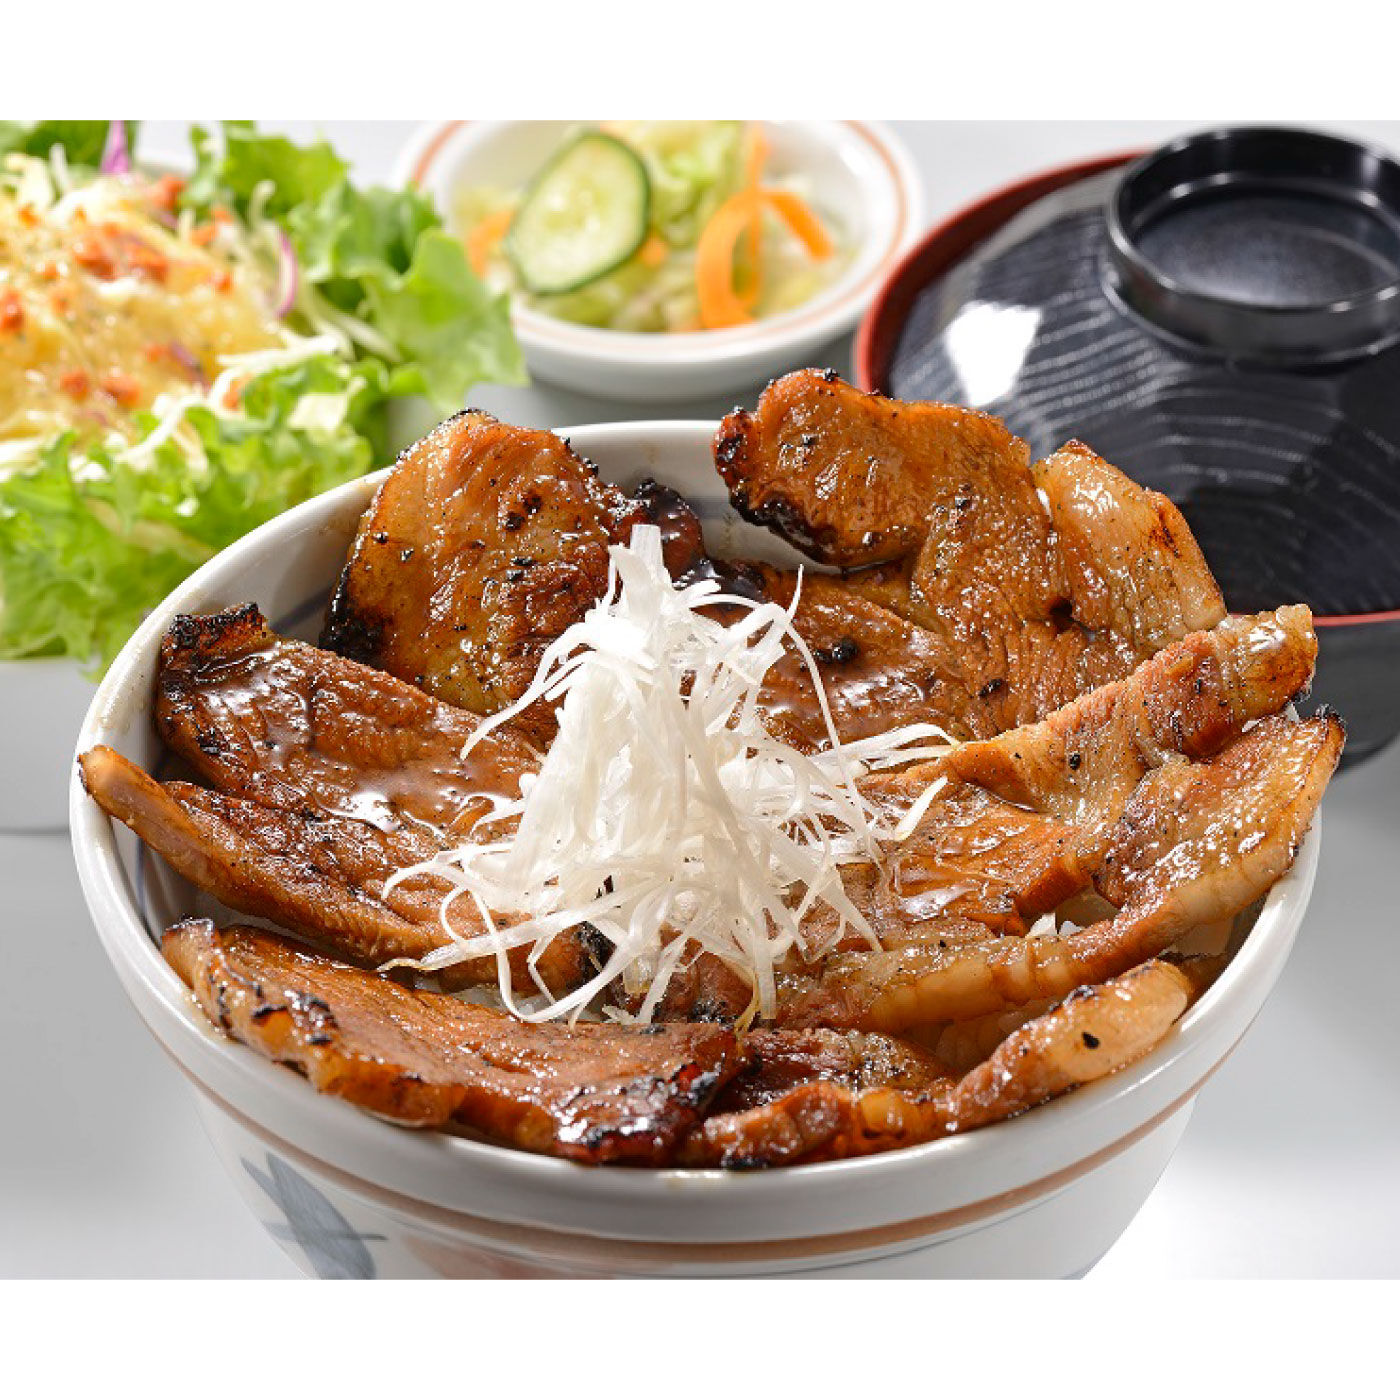 純農|純農 3種の味わいが楽しい! 北海道十勝豚丼のたれアソートの会